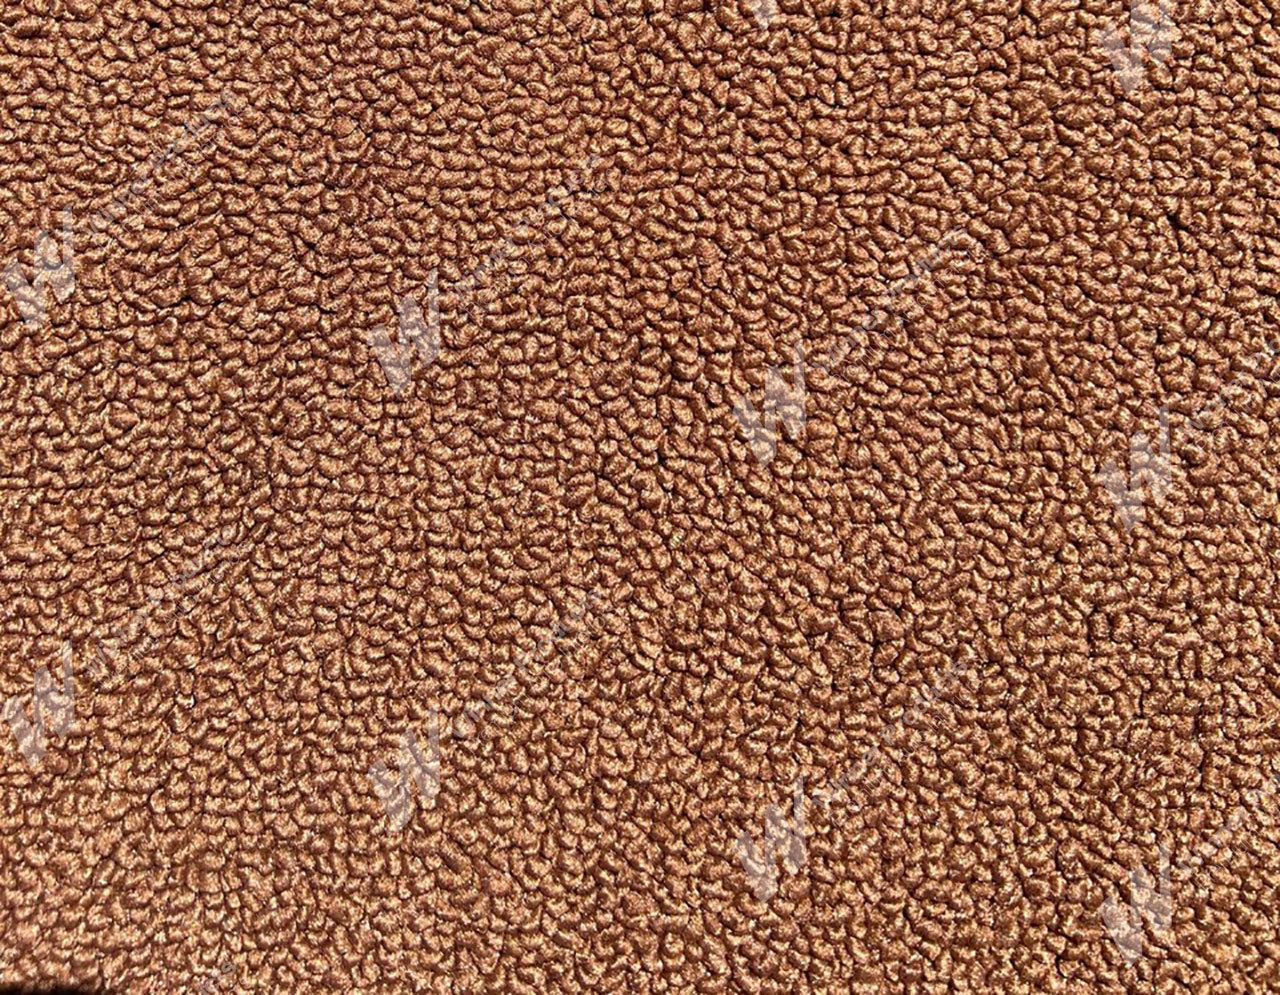 Holden Kingswood HJ Kingswood Ute 66V Chestnut Carpet (Image 1 of 1)